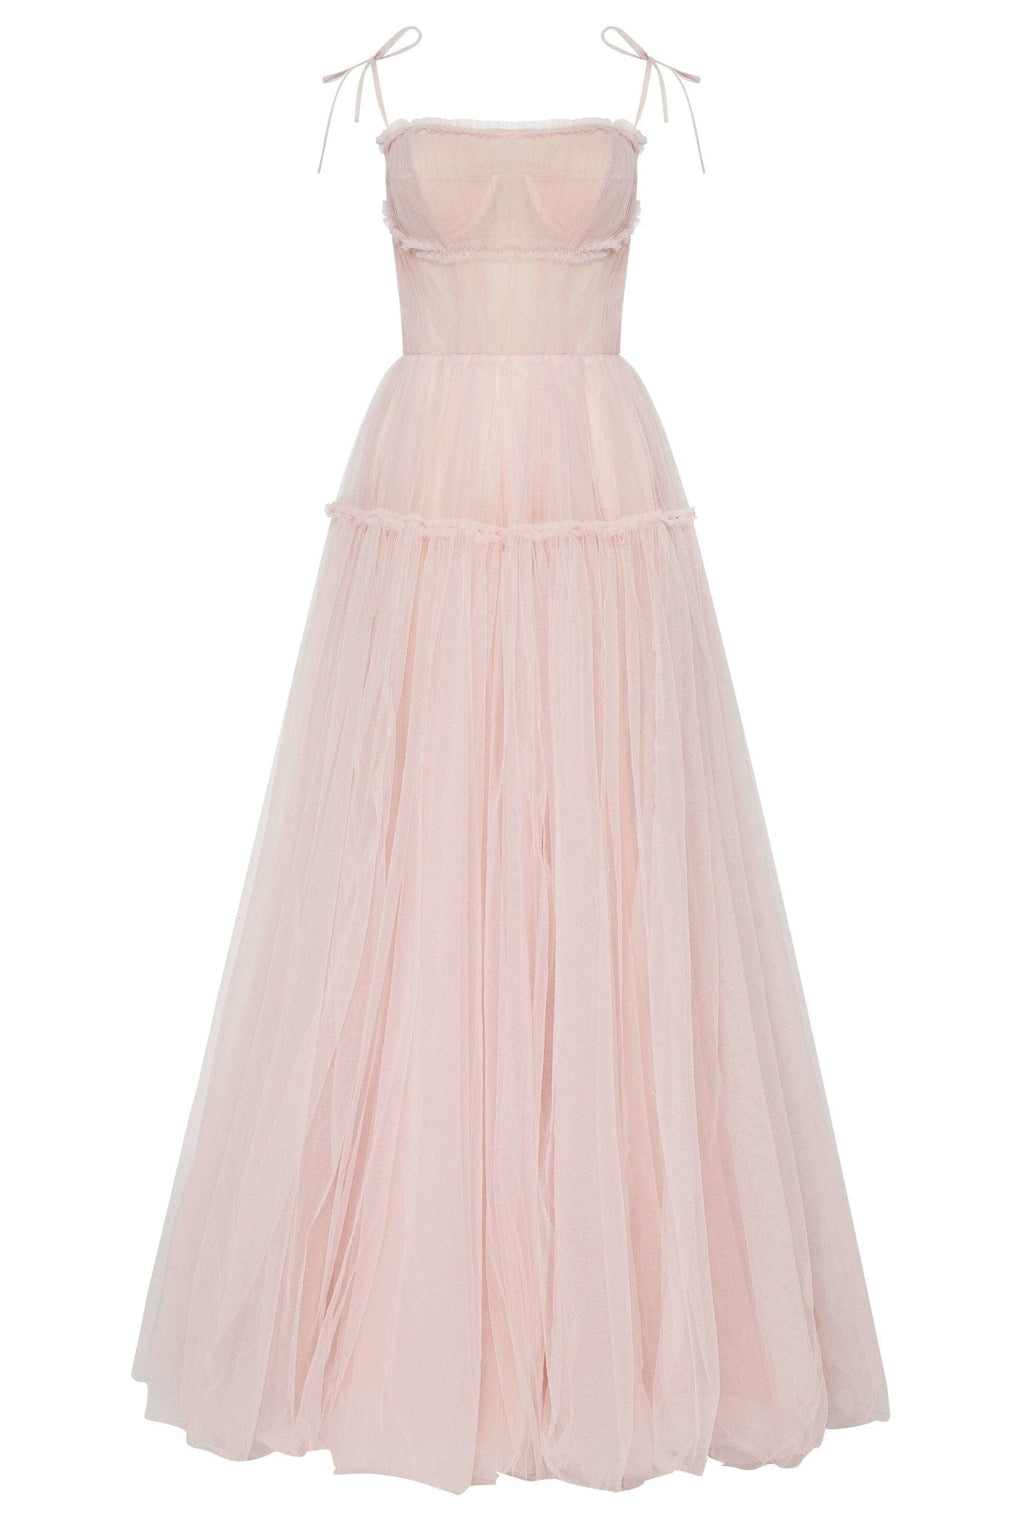 Pink Satin Corset Dress / Pink Satin Short Sleeve Dress /short Pink Corset  Dress/ Birthday, Party, Prom Dress -  Canada